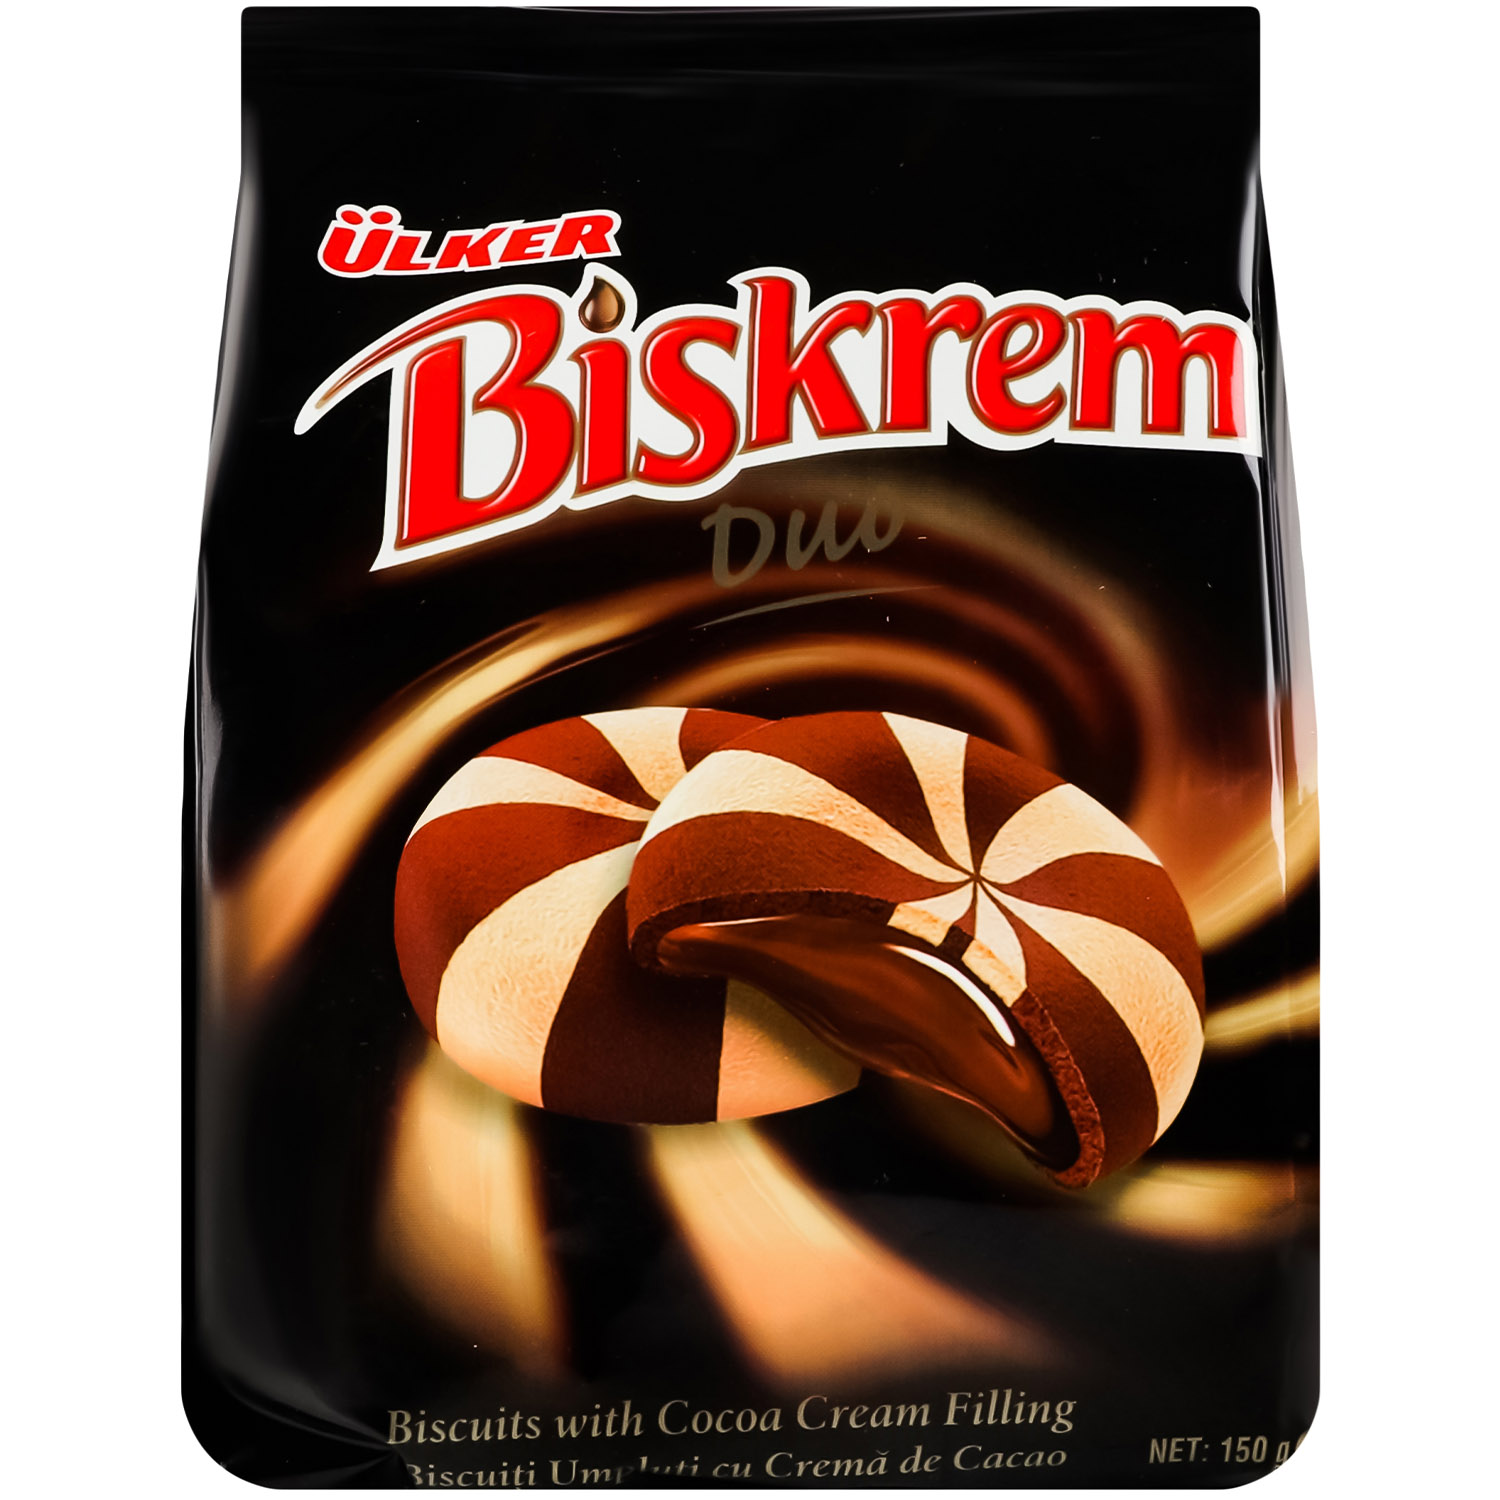 Печенье Ulker Biskrem Duo с какао-кремом 150 г (895519) - фото 1